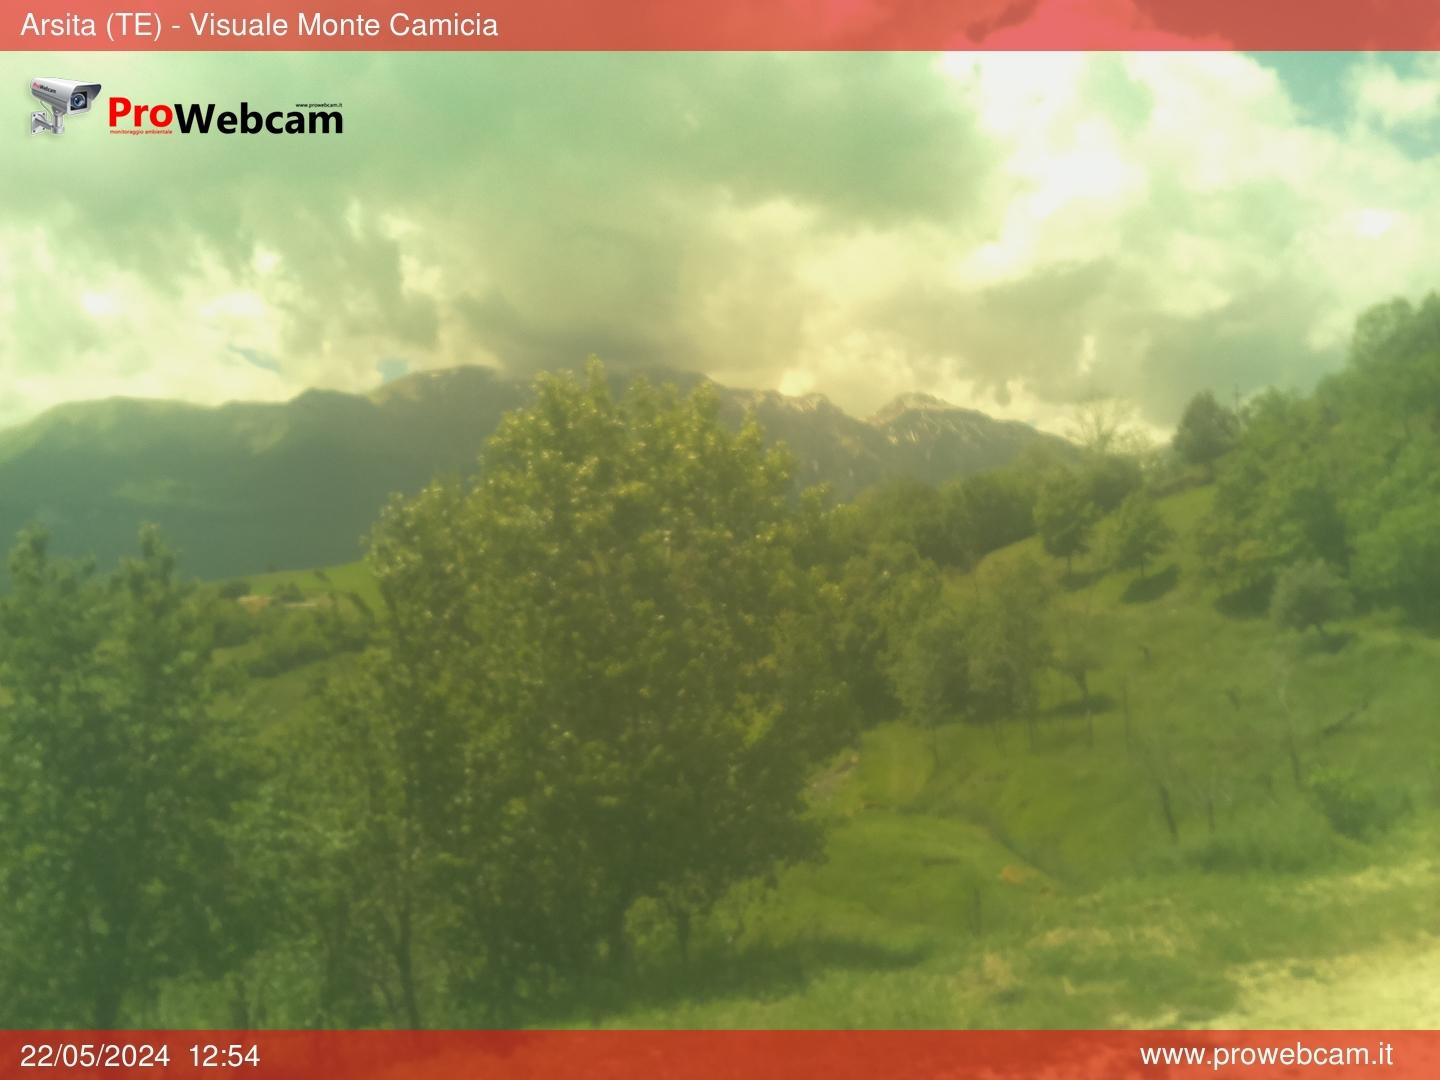 immagine della webcam nei dintorni di Casale San Nicola (alto): webcam Arsita